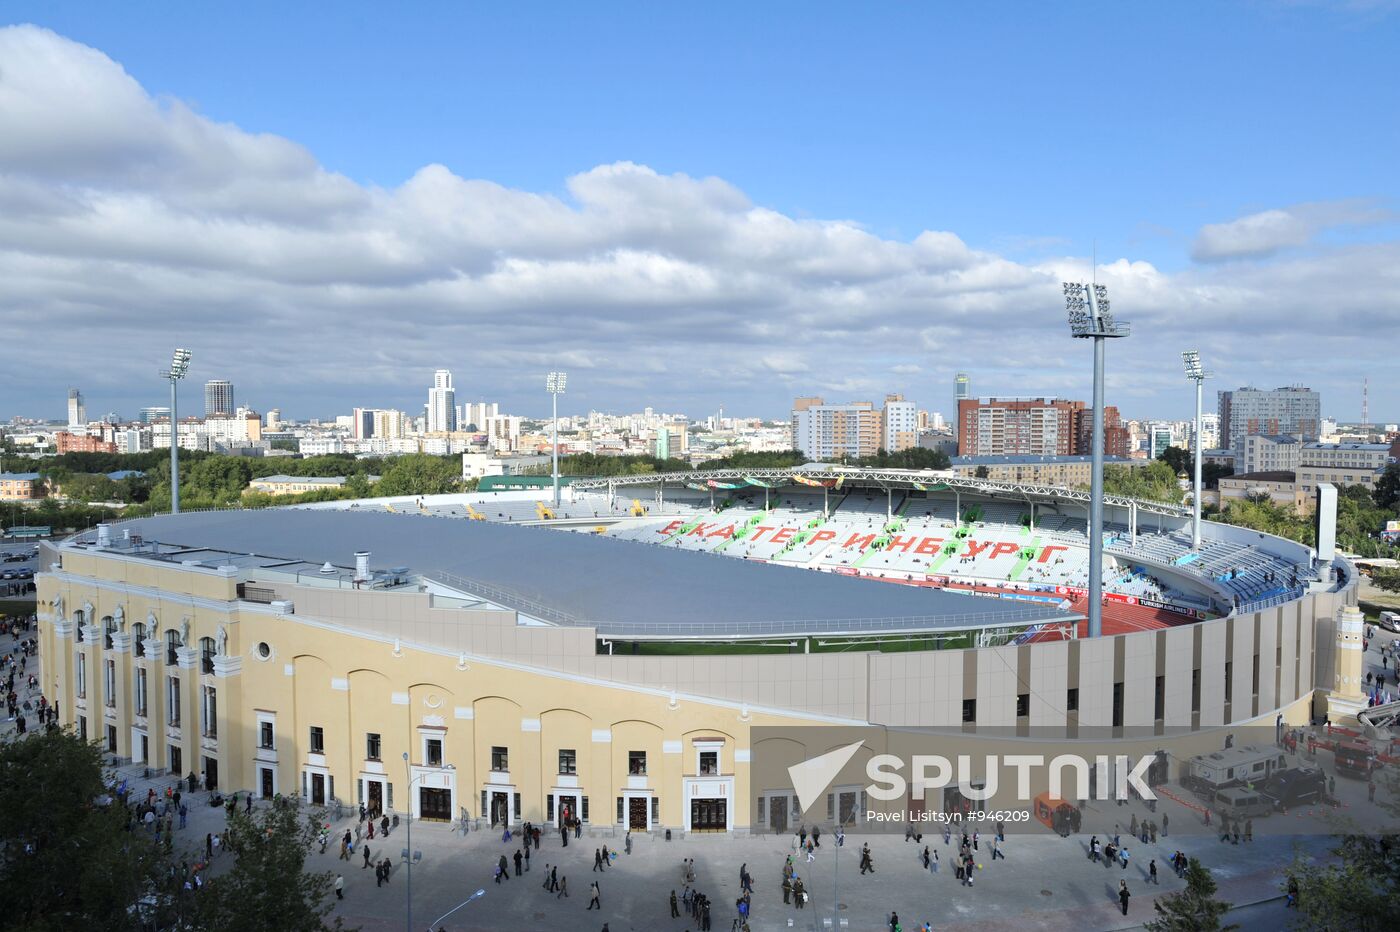 Opening of Tsentralny stadium in Yekaterinburg